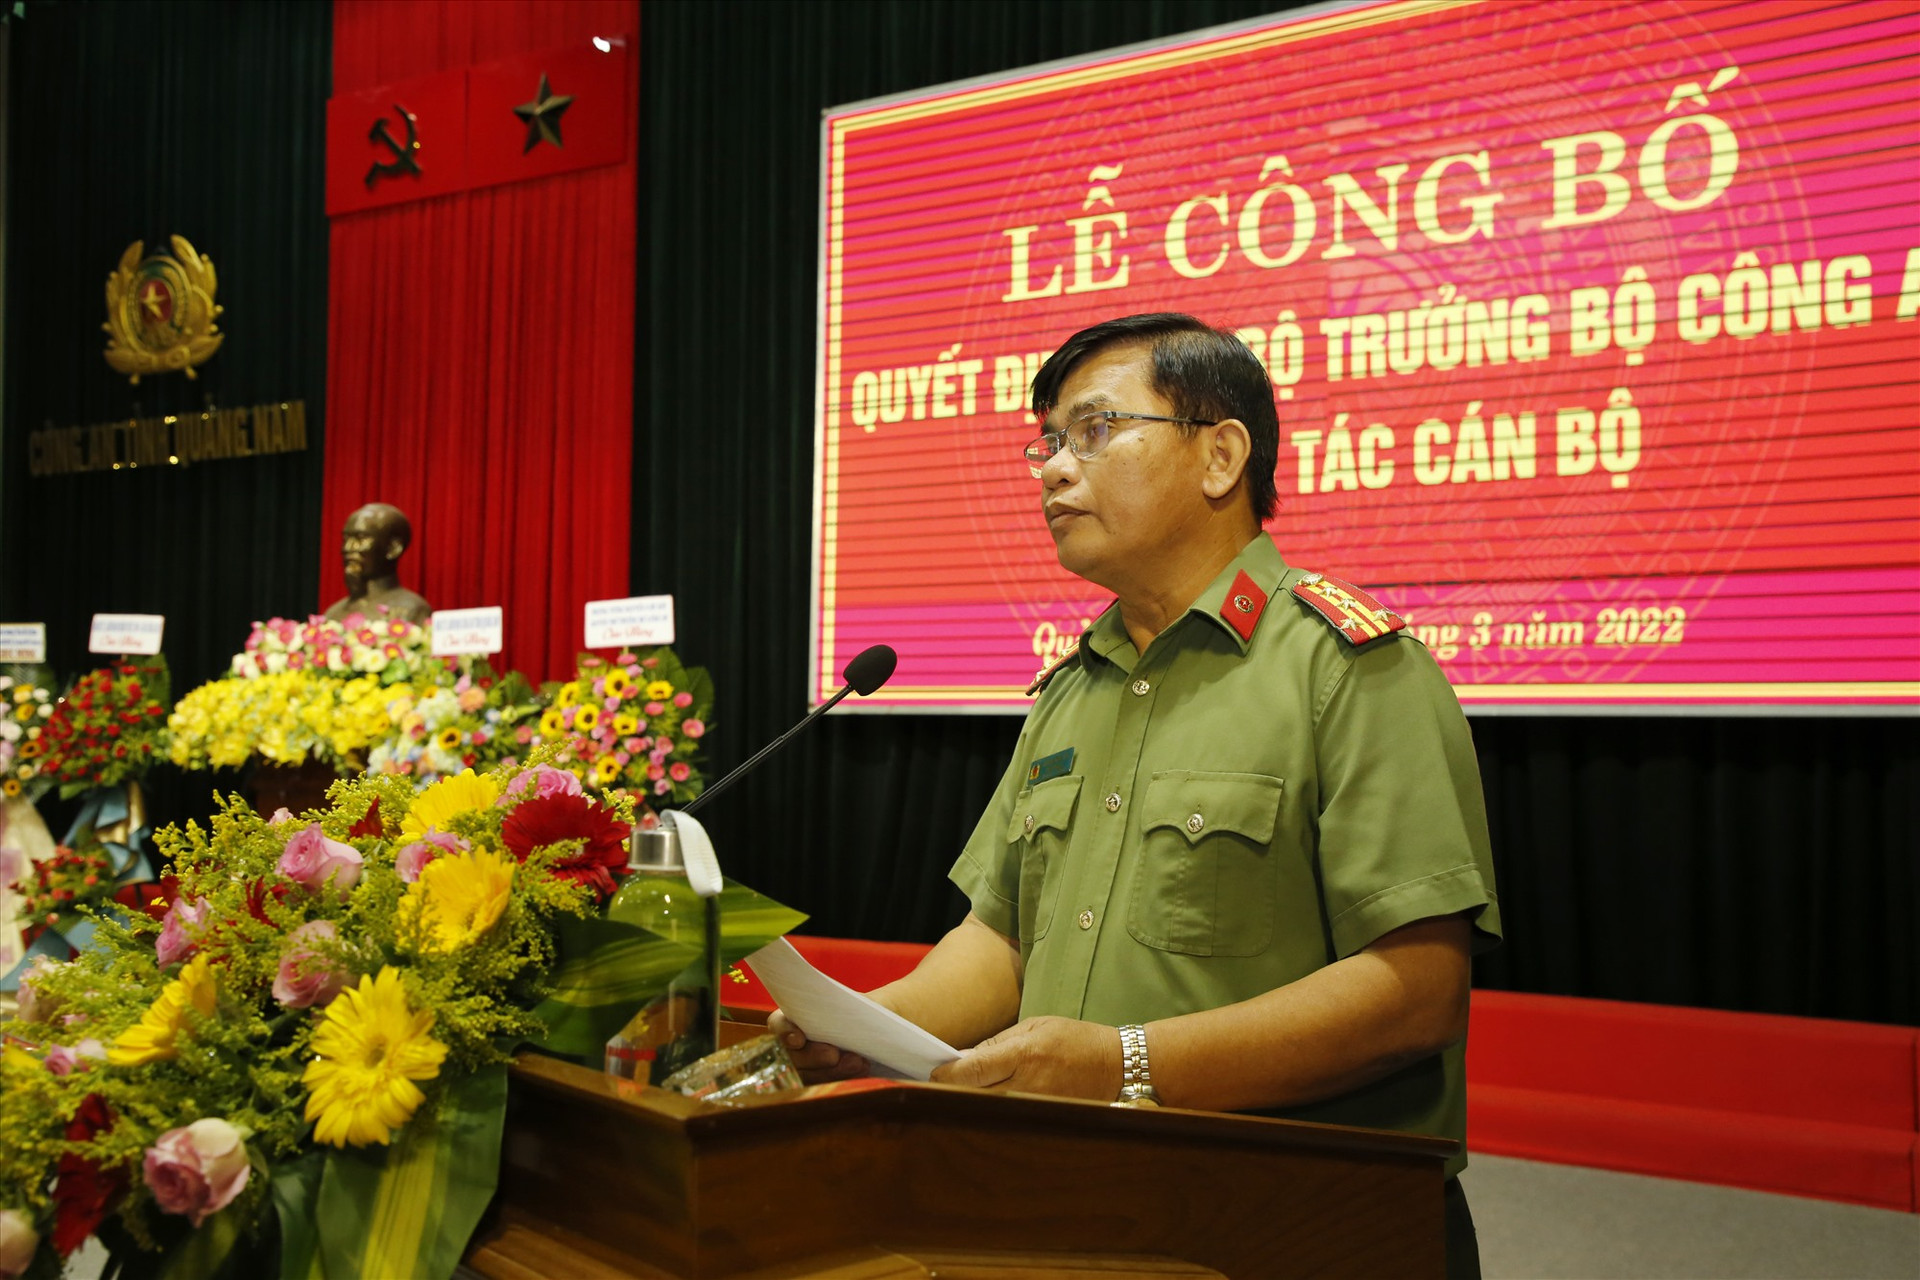 Đại tá Huỳnh Sông Thu - Phó Giám đốc Công an tỉnh công bố quyết định điều động công tác đối với Trung tá Nguyễn Văn Tuấn. Ảnh: T.C